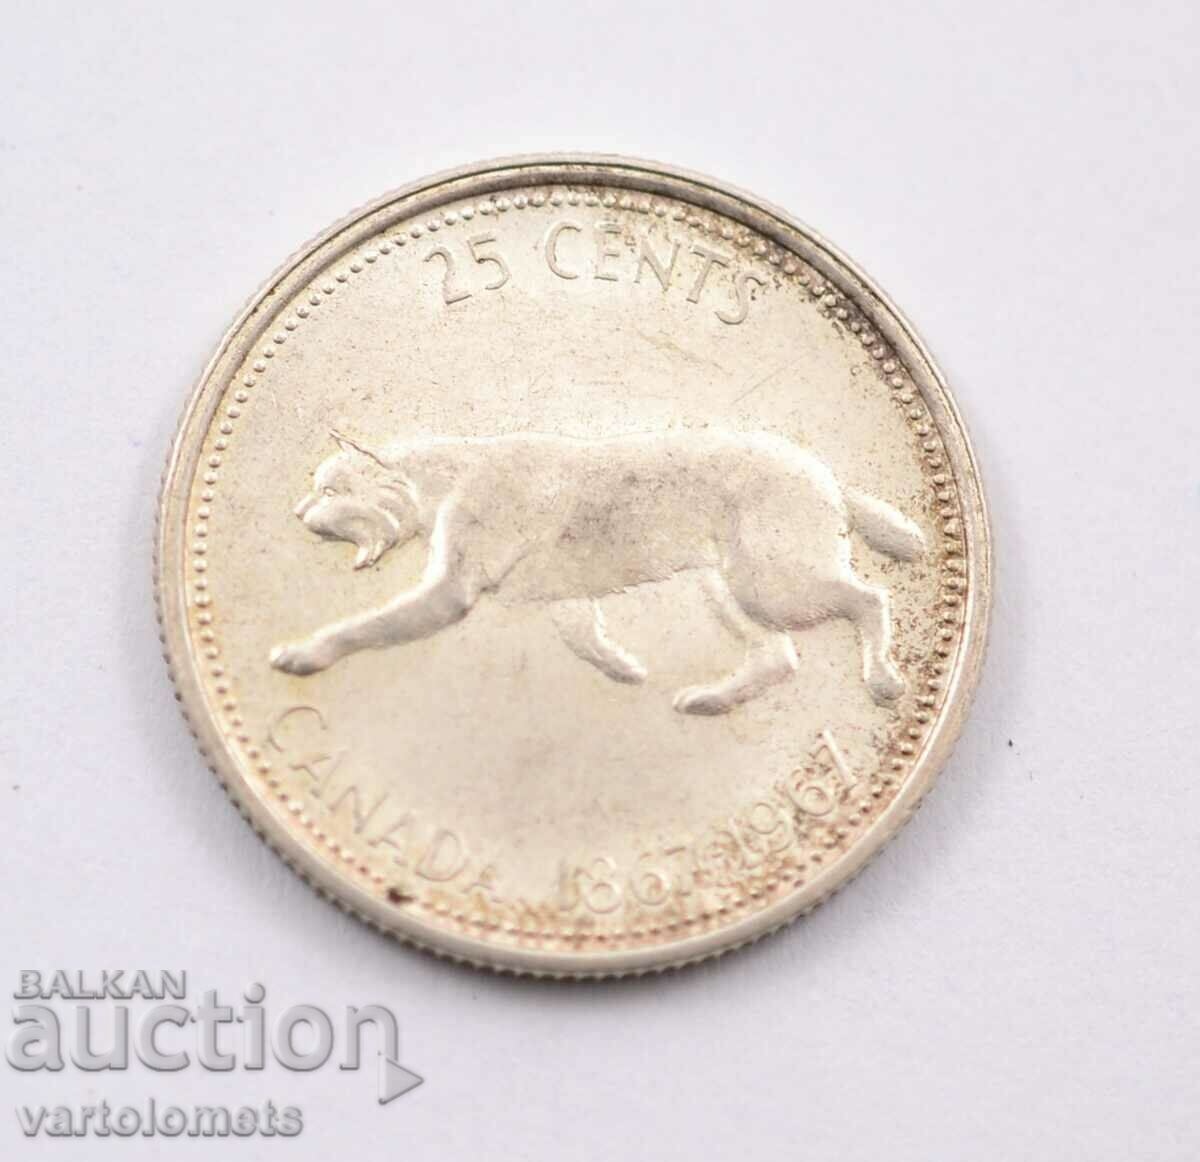 25 de cenți, 1967 - Canada, Argint 0,800, 5,83 gr., ø23,88 mm